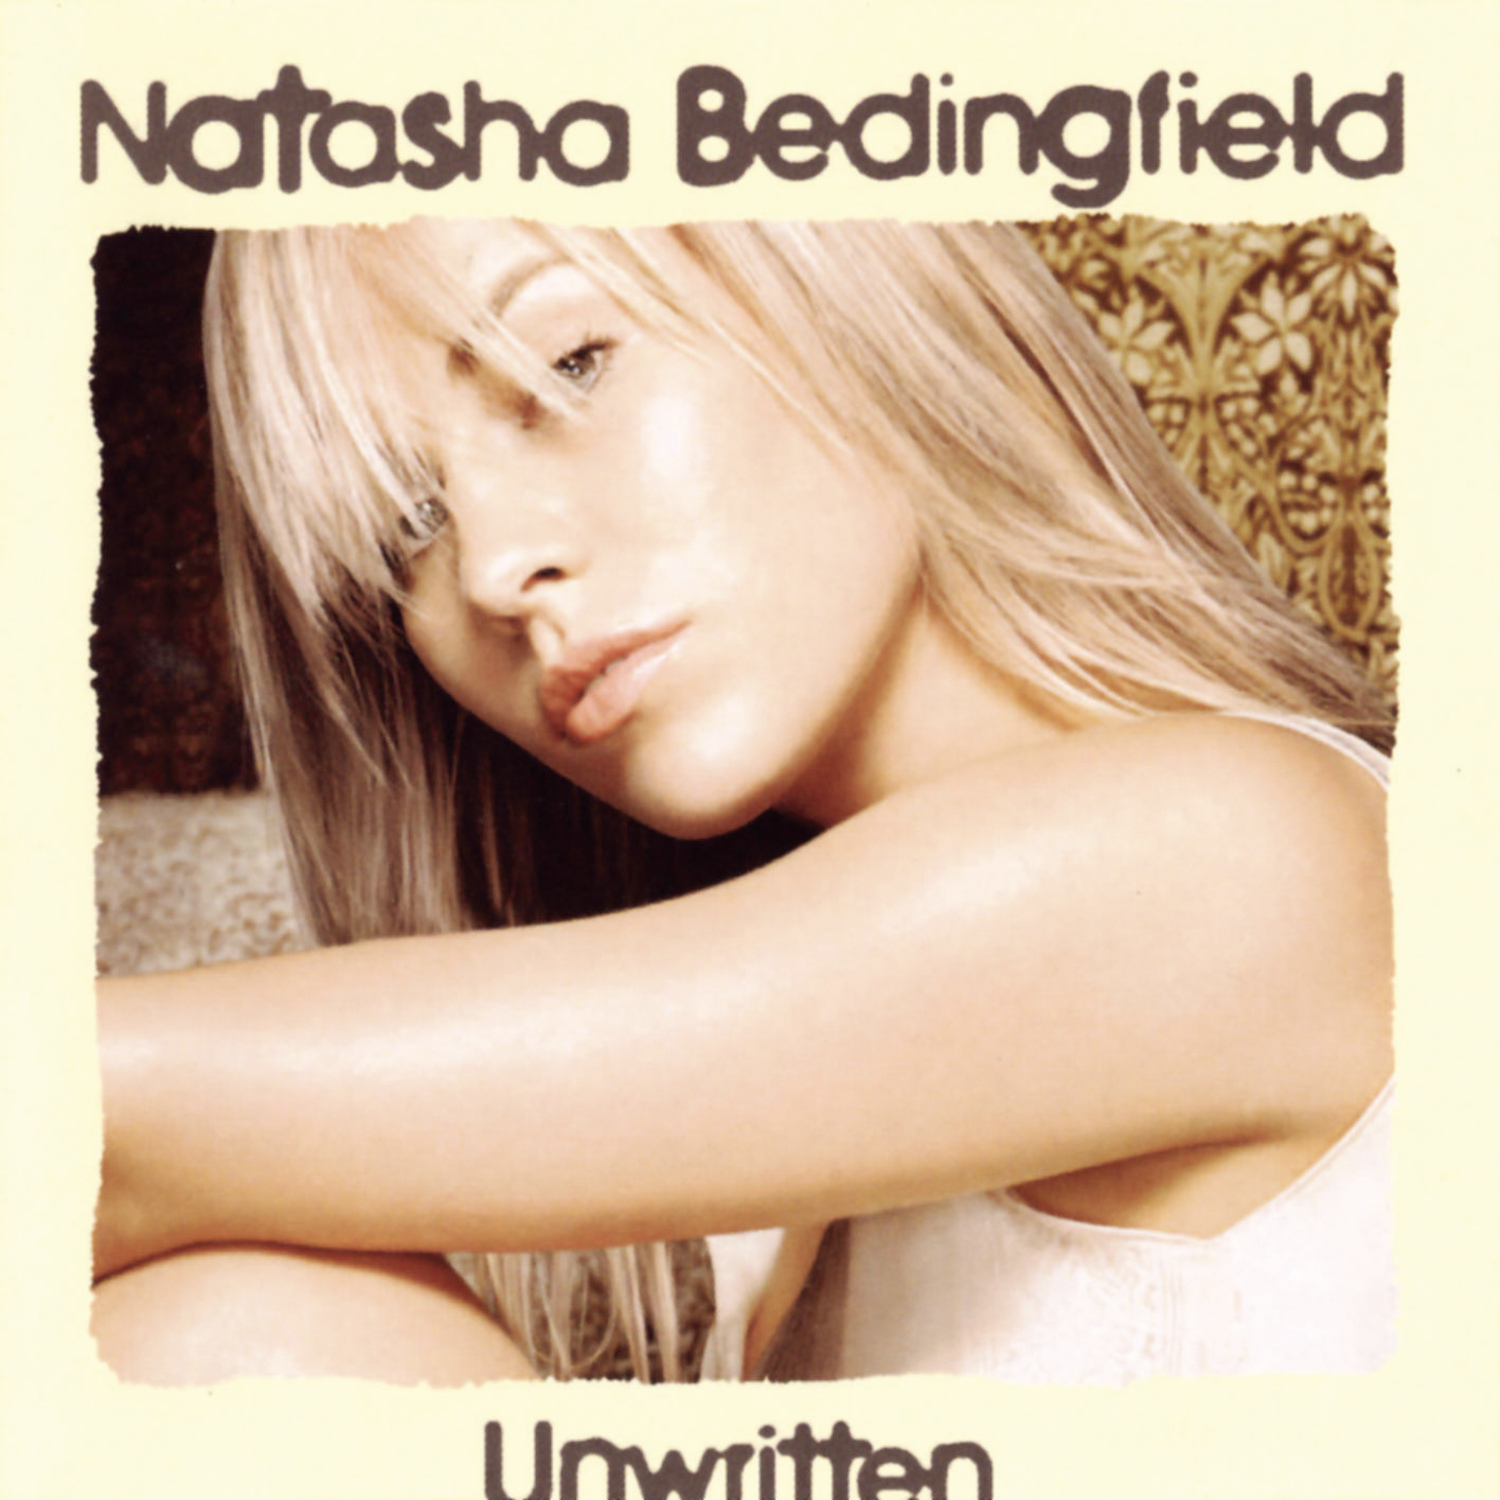 “Unwritten”, iconico brano di Natasha Bedingfield, continua a distanza di 19 anni dalla sua uscita a scalare le classifiche